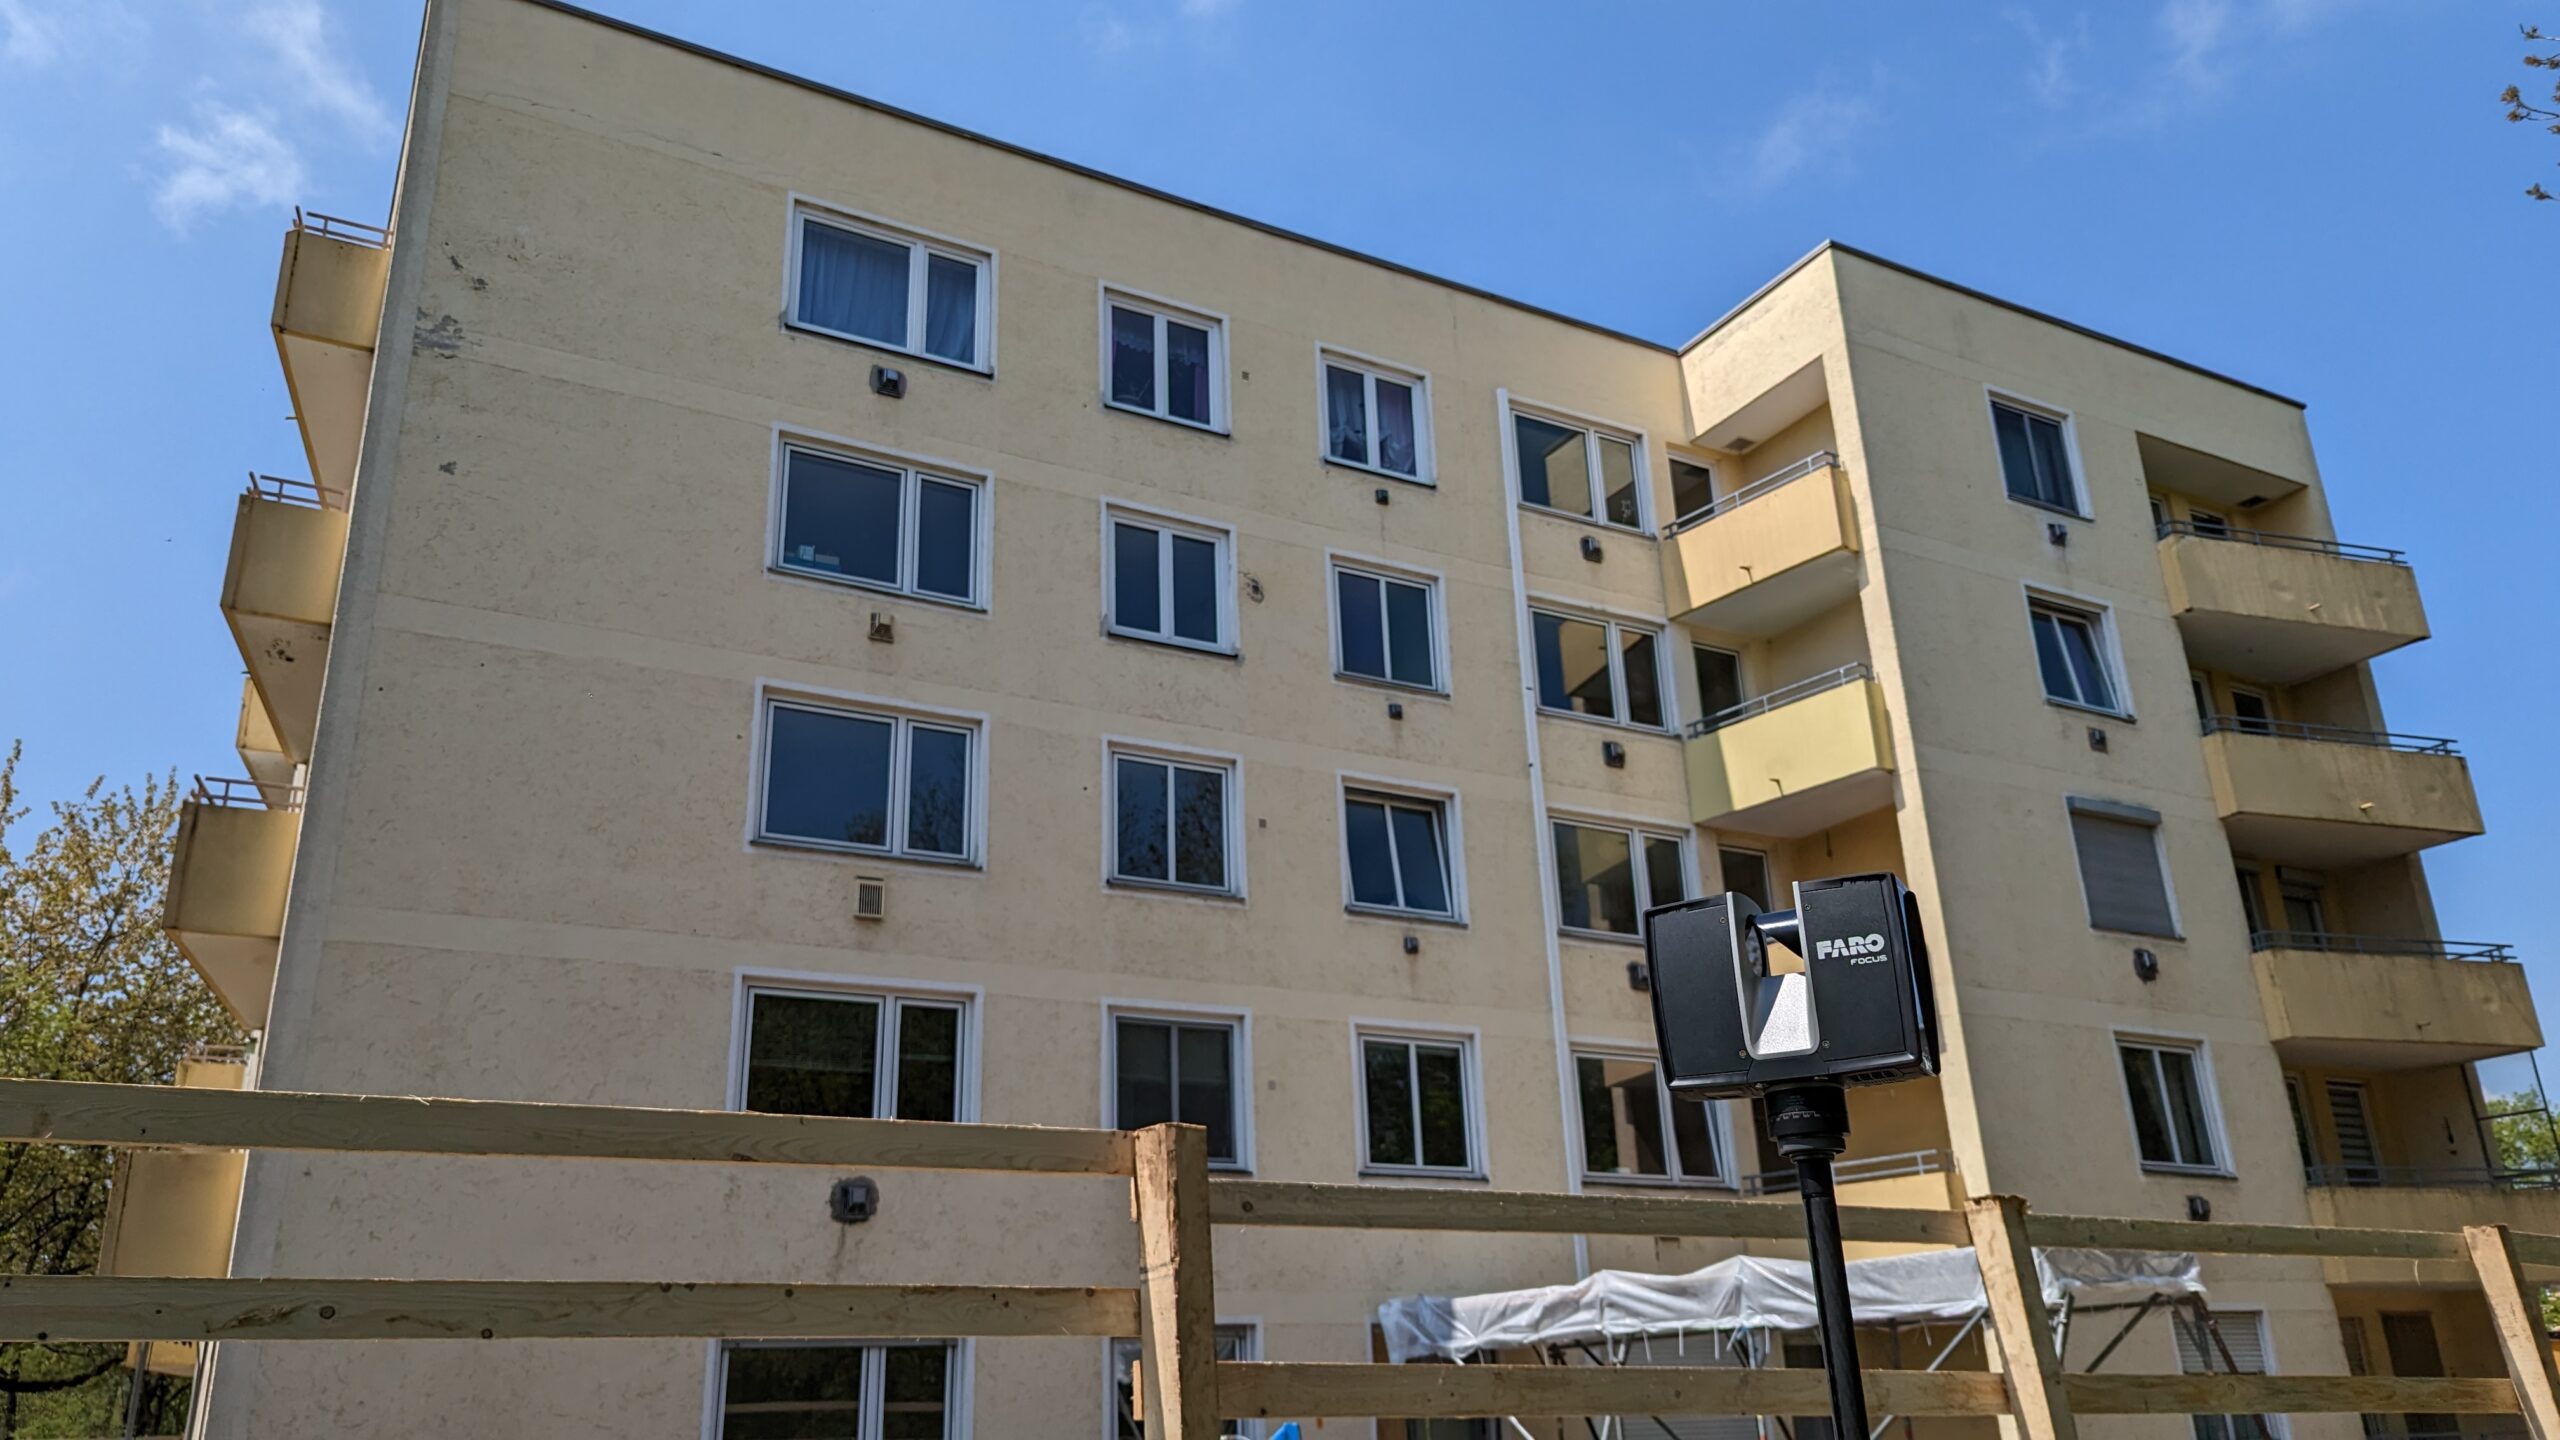 FARO 3D Laserscanner beim Vermessen der Fassade eines Mehrfamilienhauses in München